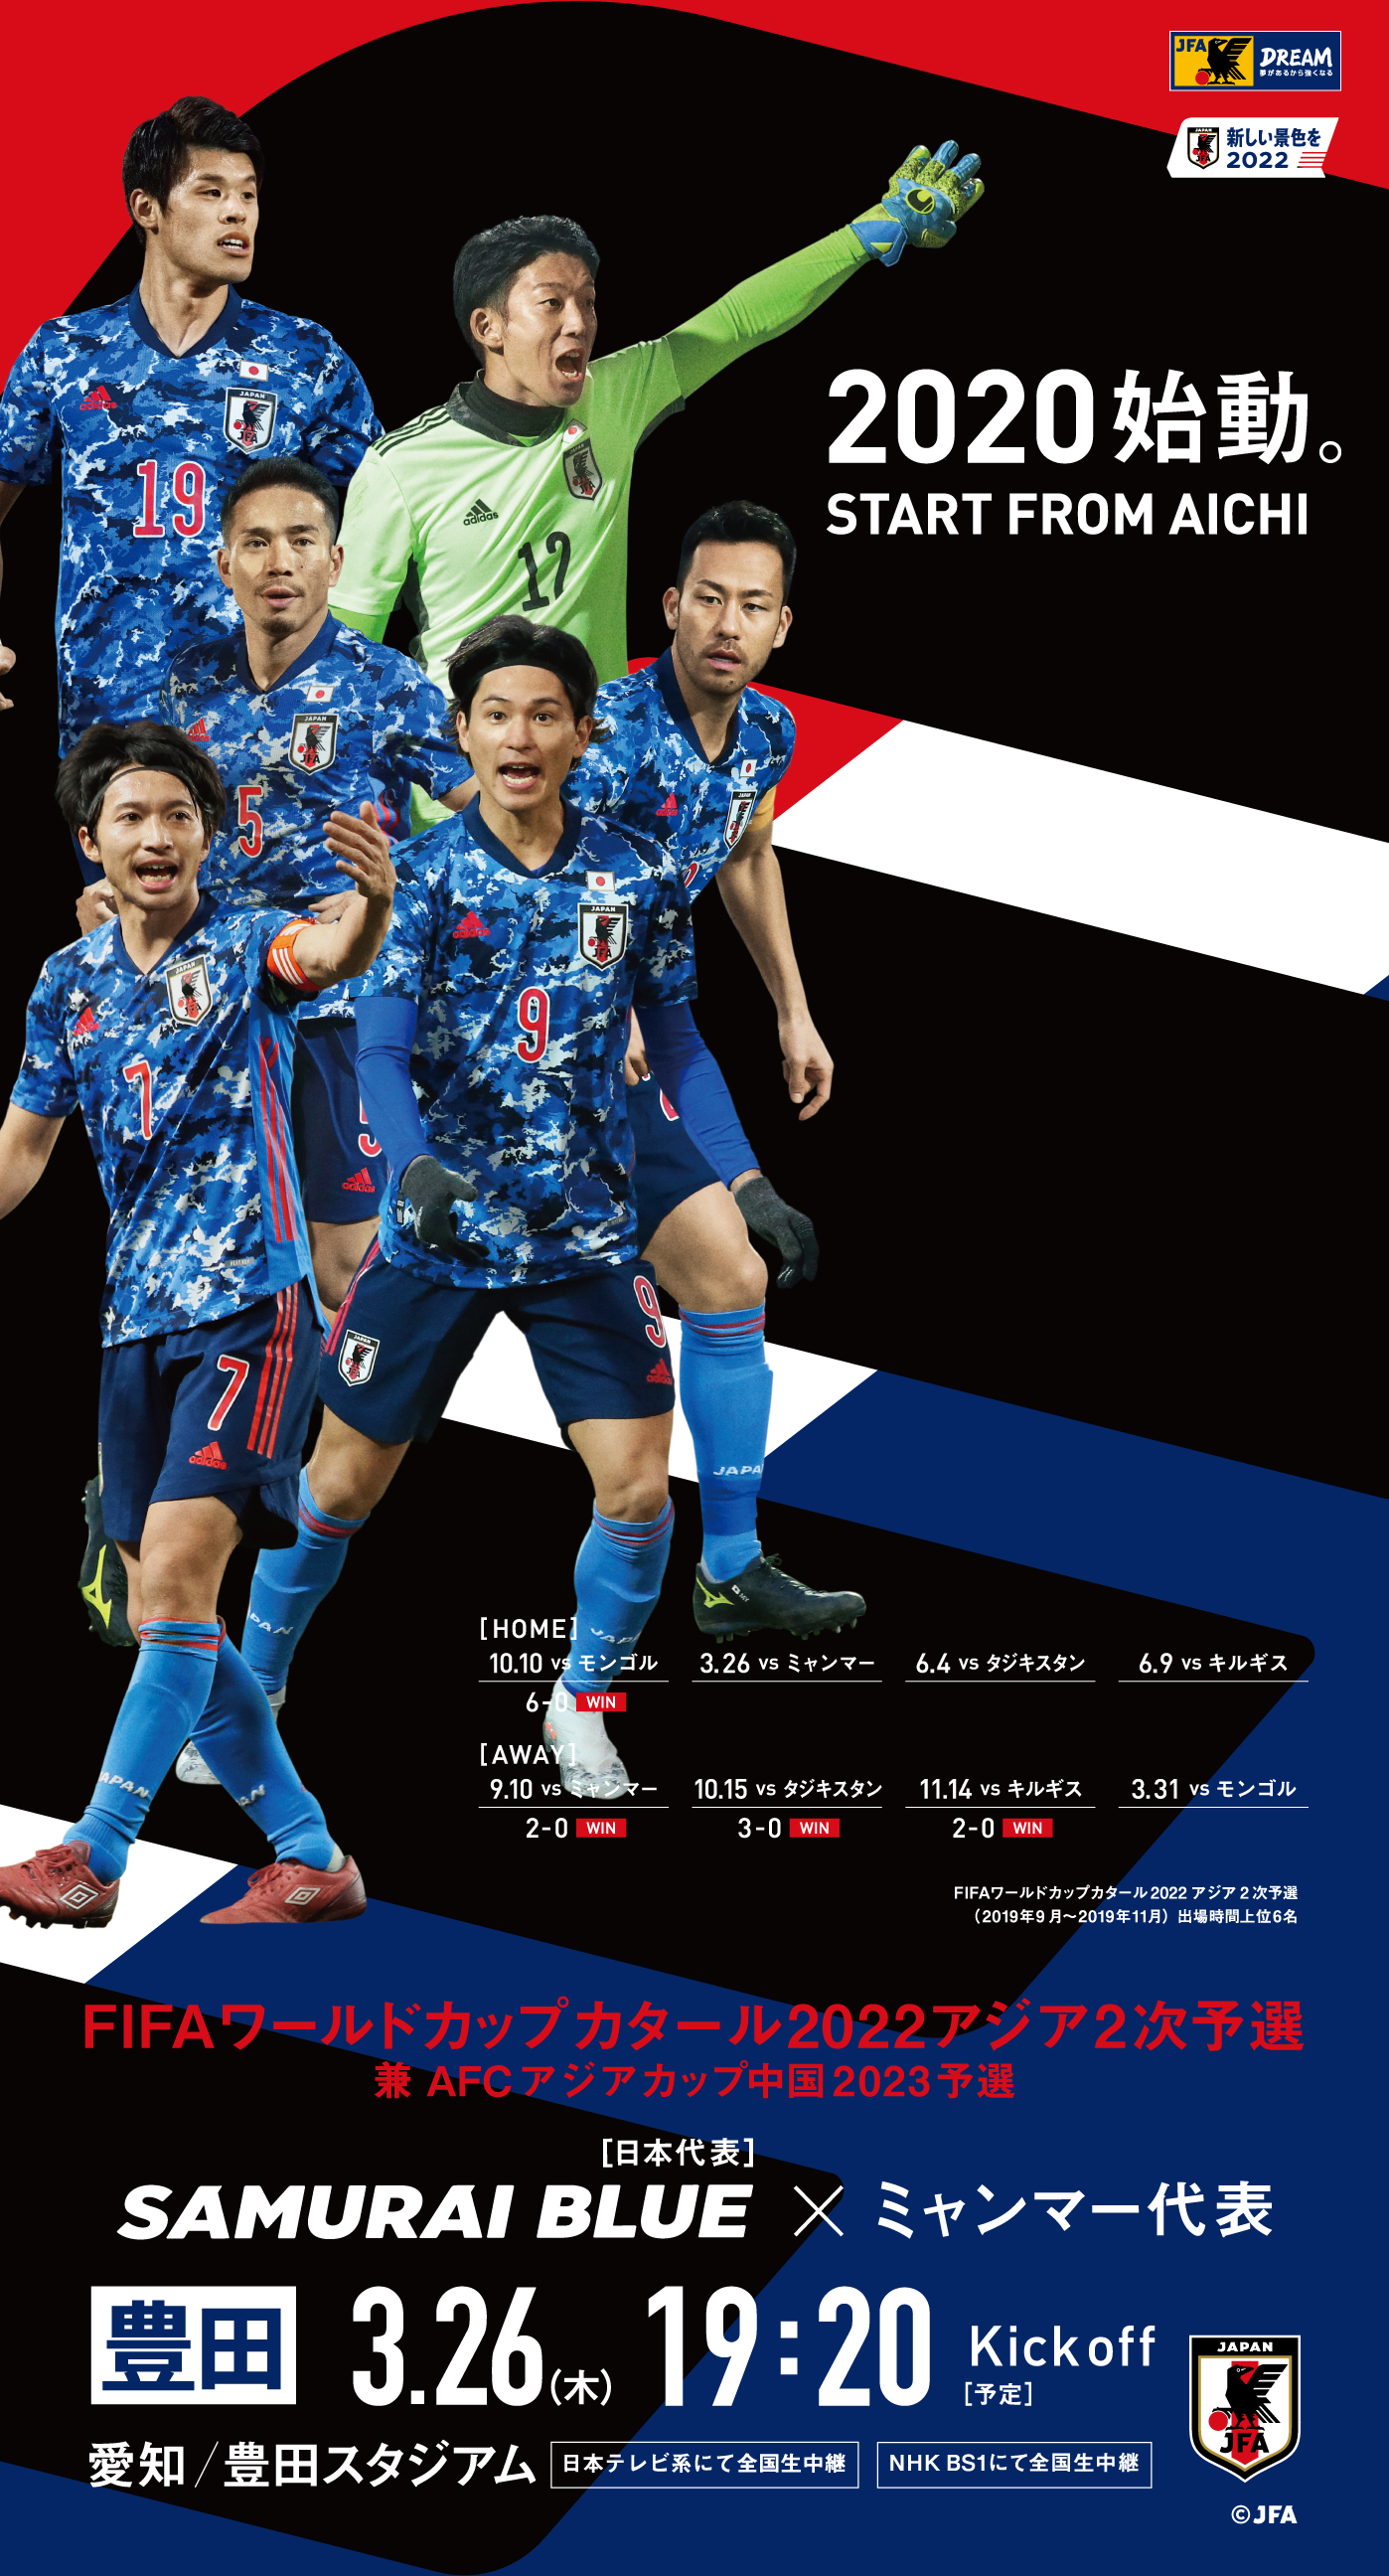 壁紙 ポスターダウンロード 22fifaワールドカップカタールアジア2次予選兼afcアジアカップ中国23予選 Top Samurai Blue 日本代表 Jfa 日本サッカー協会